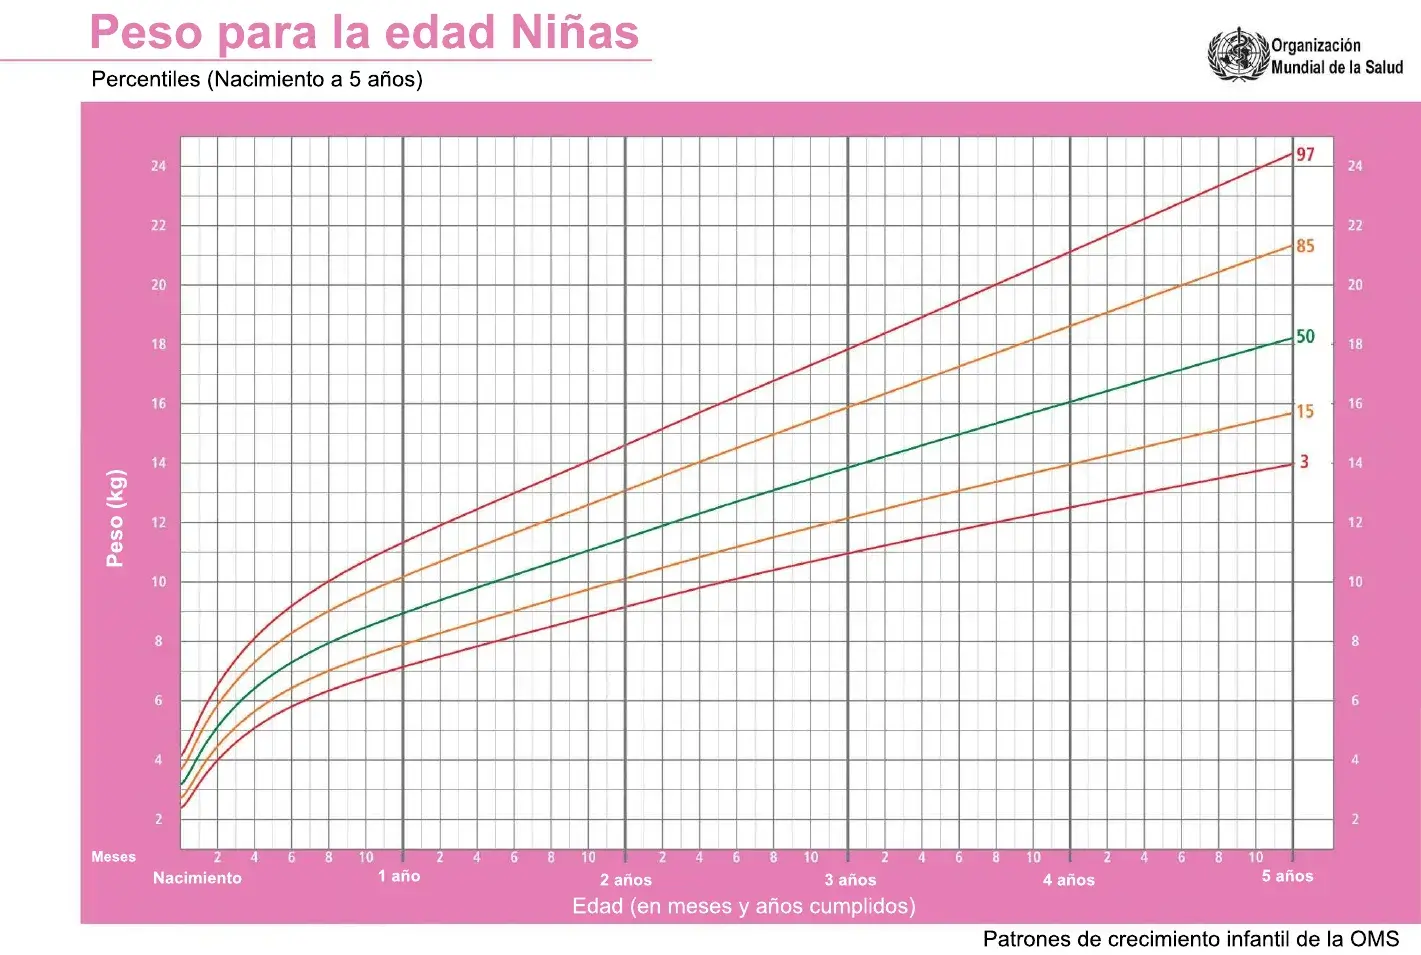 Grafica que muestra los percentiles de crecimiento comparando el peso con la edad de los niñas bebés de cero a cinco añosr